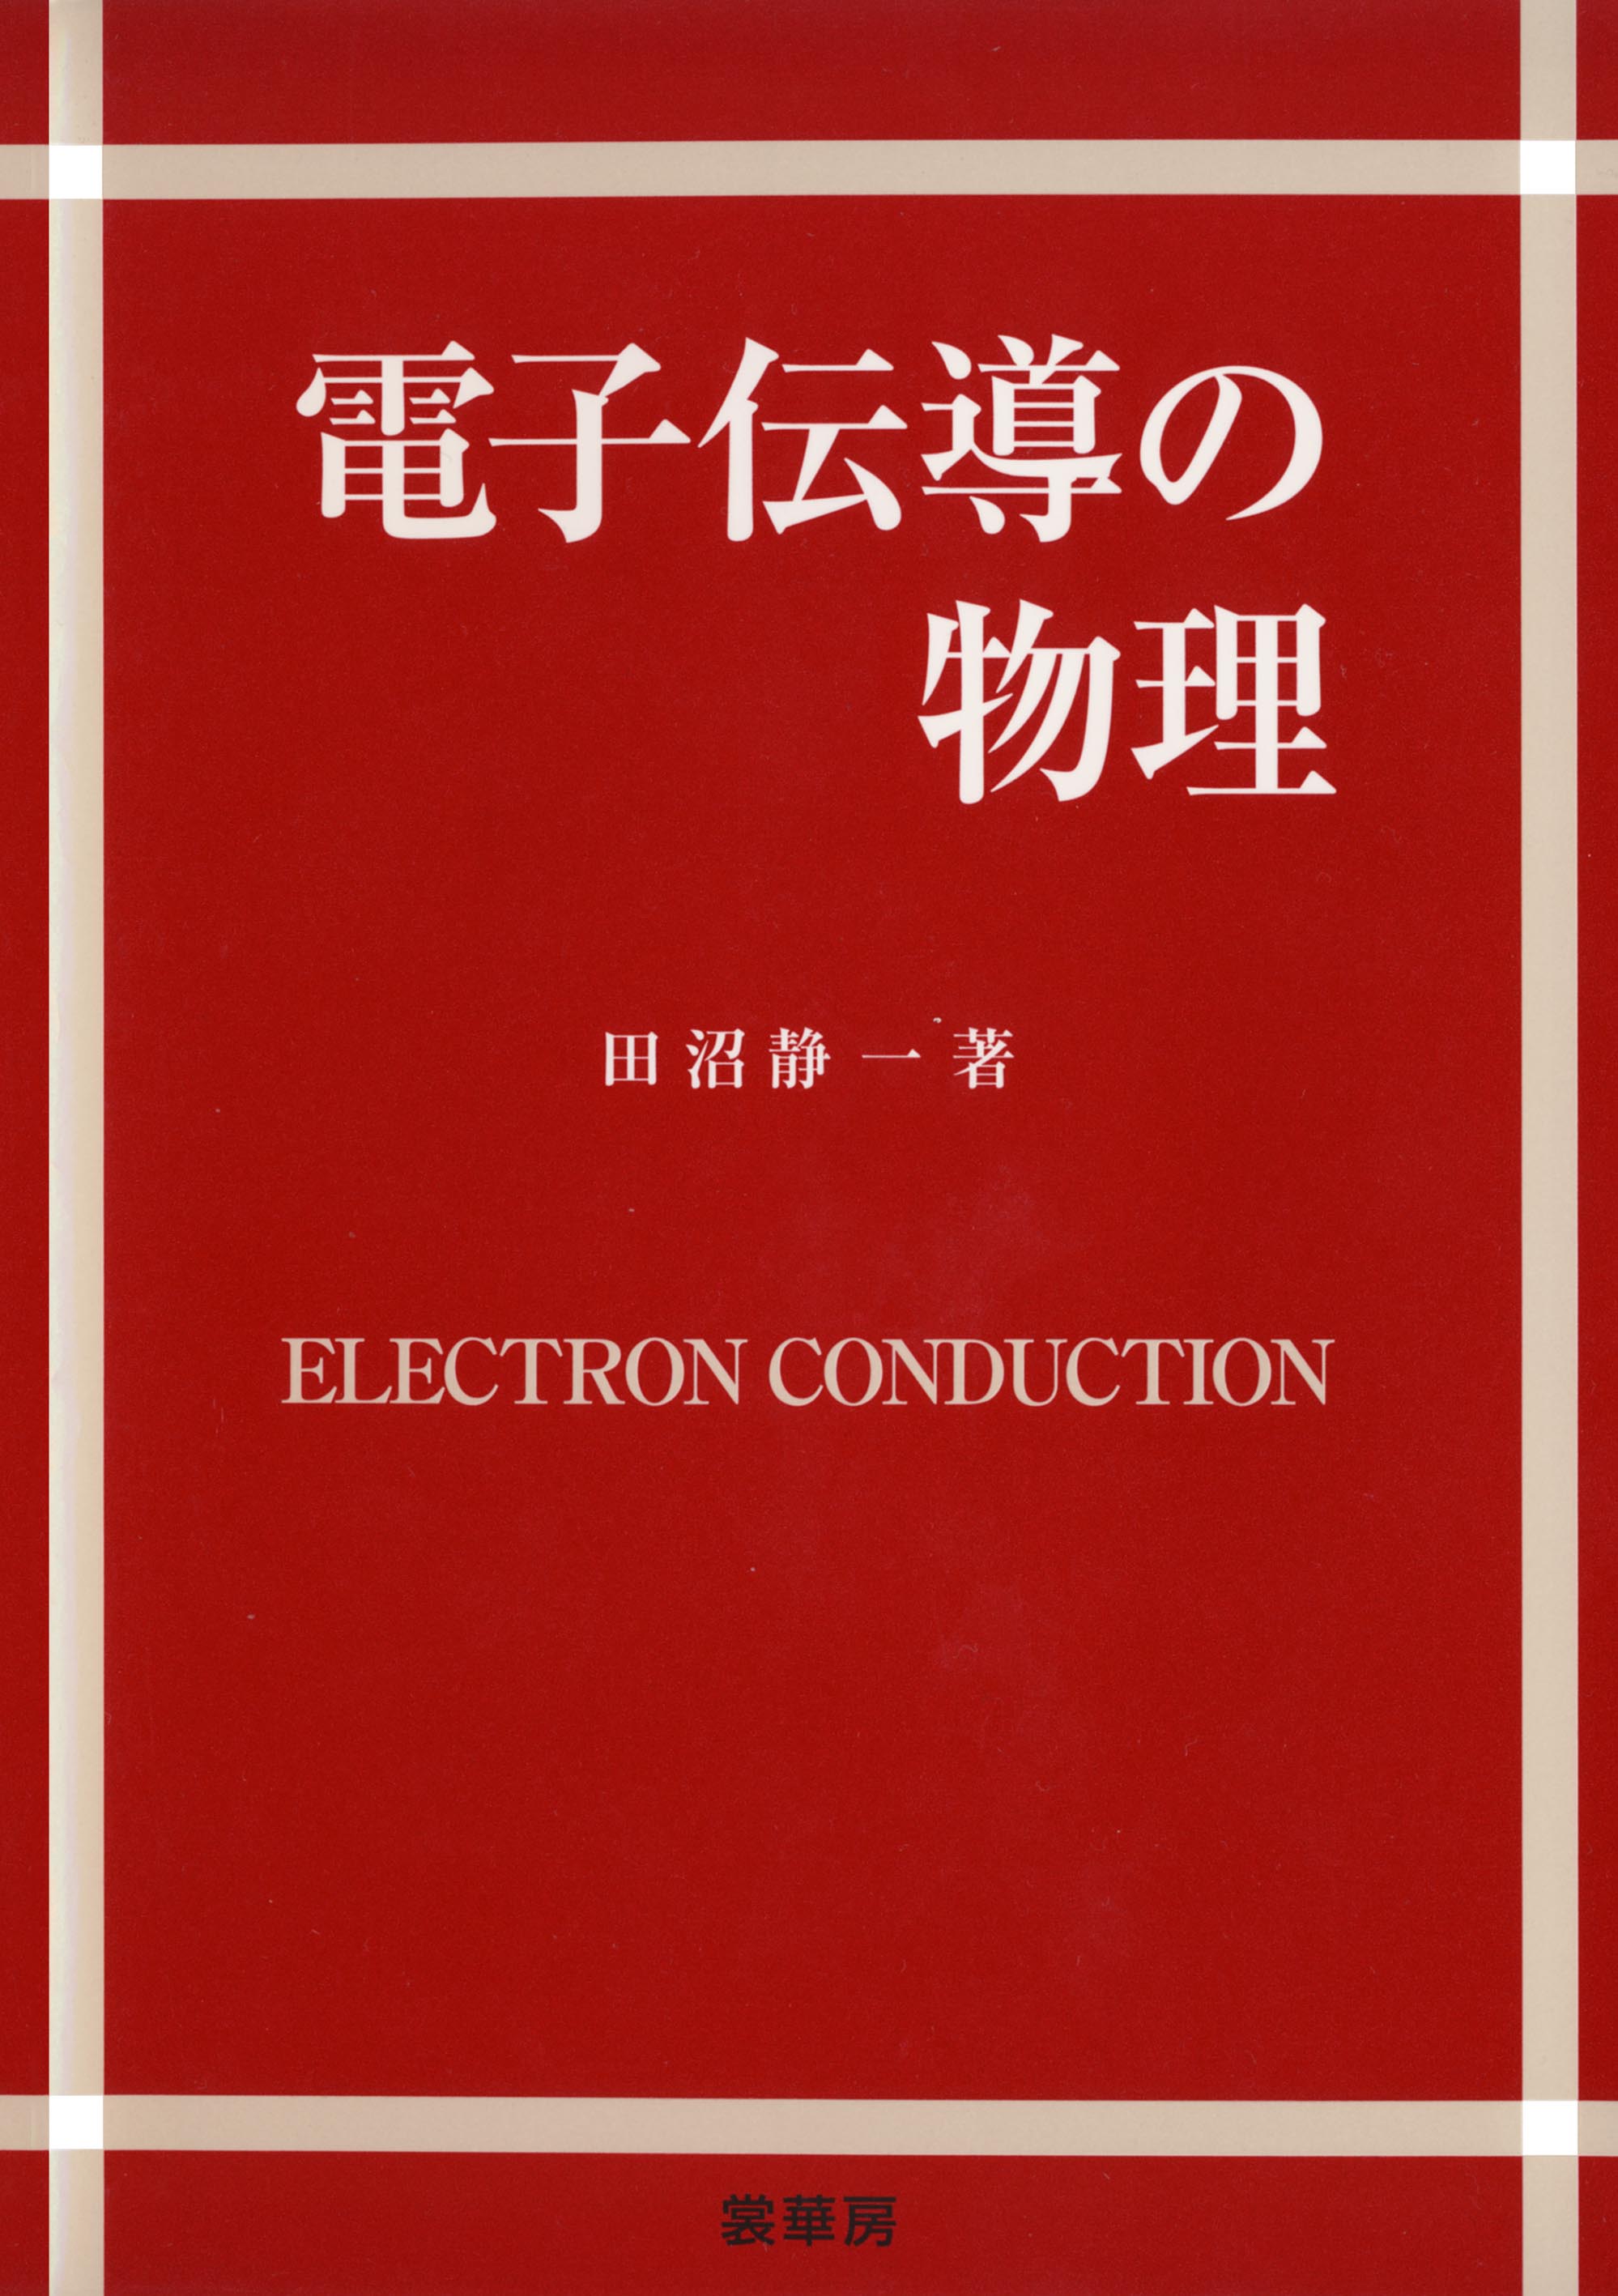 『電子伝導の物理』 カバー